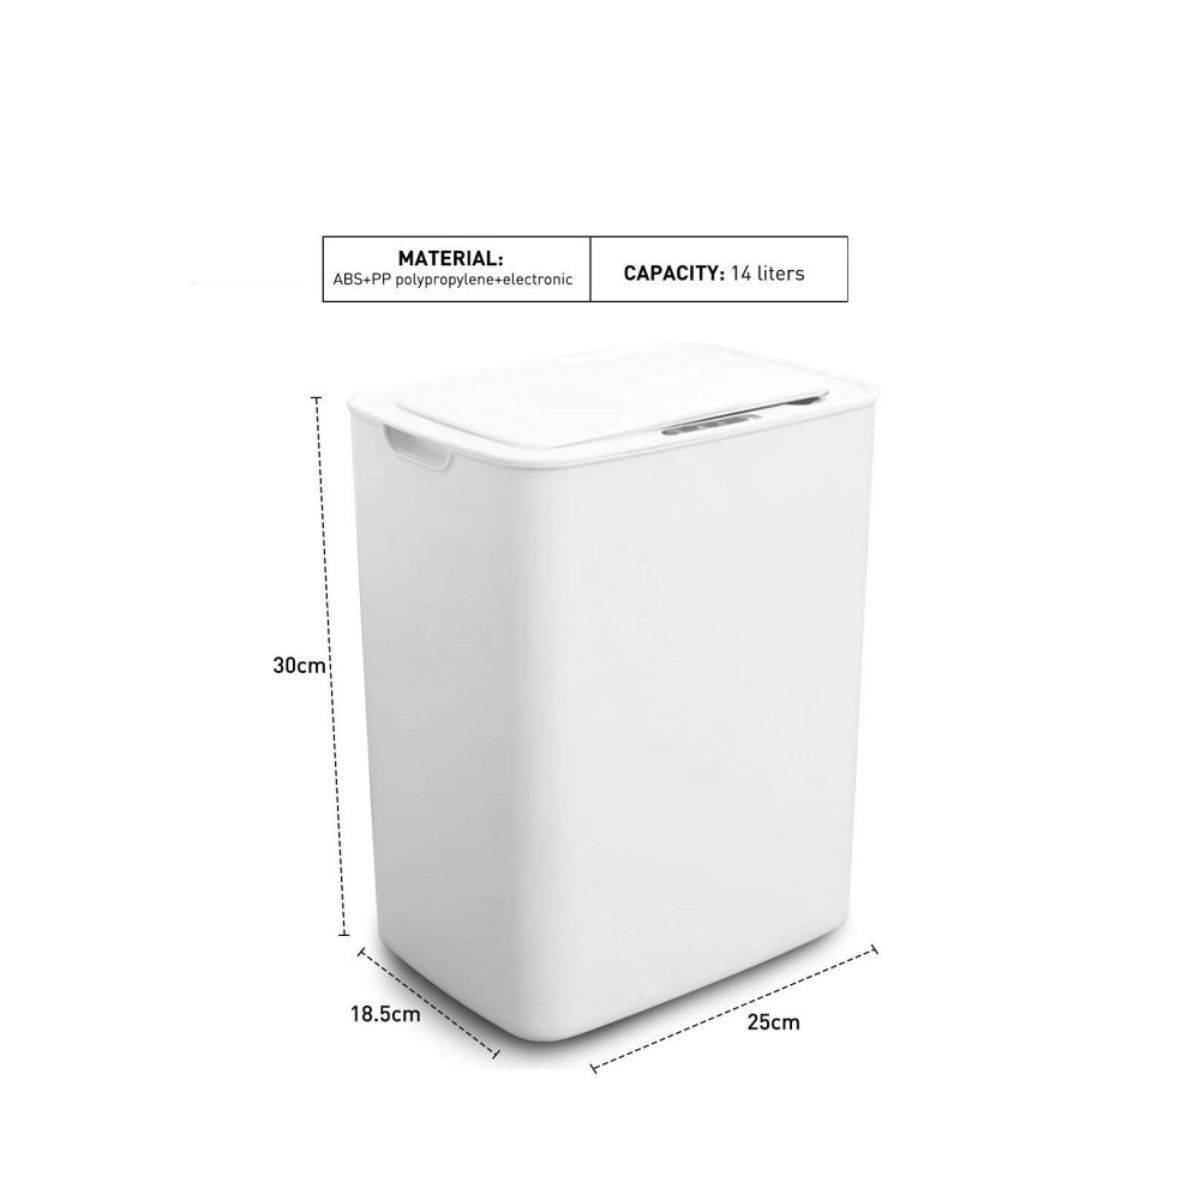 Menaj - Cos de gunoi automat cu senzor, pentru bucatarie sau baie, capacitate 14 l, reincarcabil cu usb, Victronic CG3903 (alb), hectarul.ro